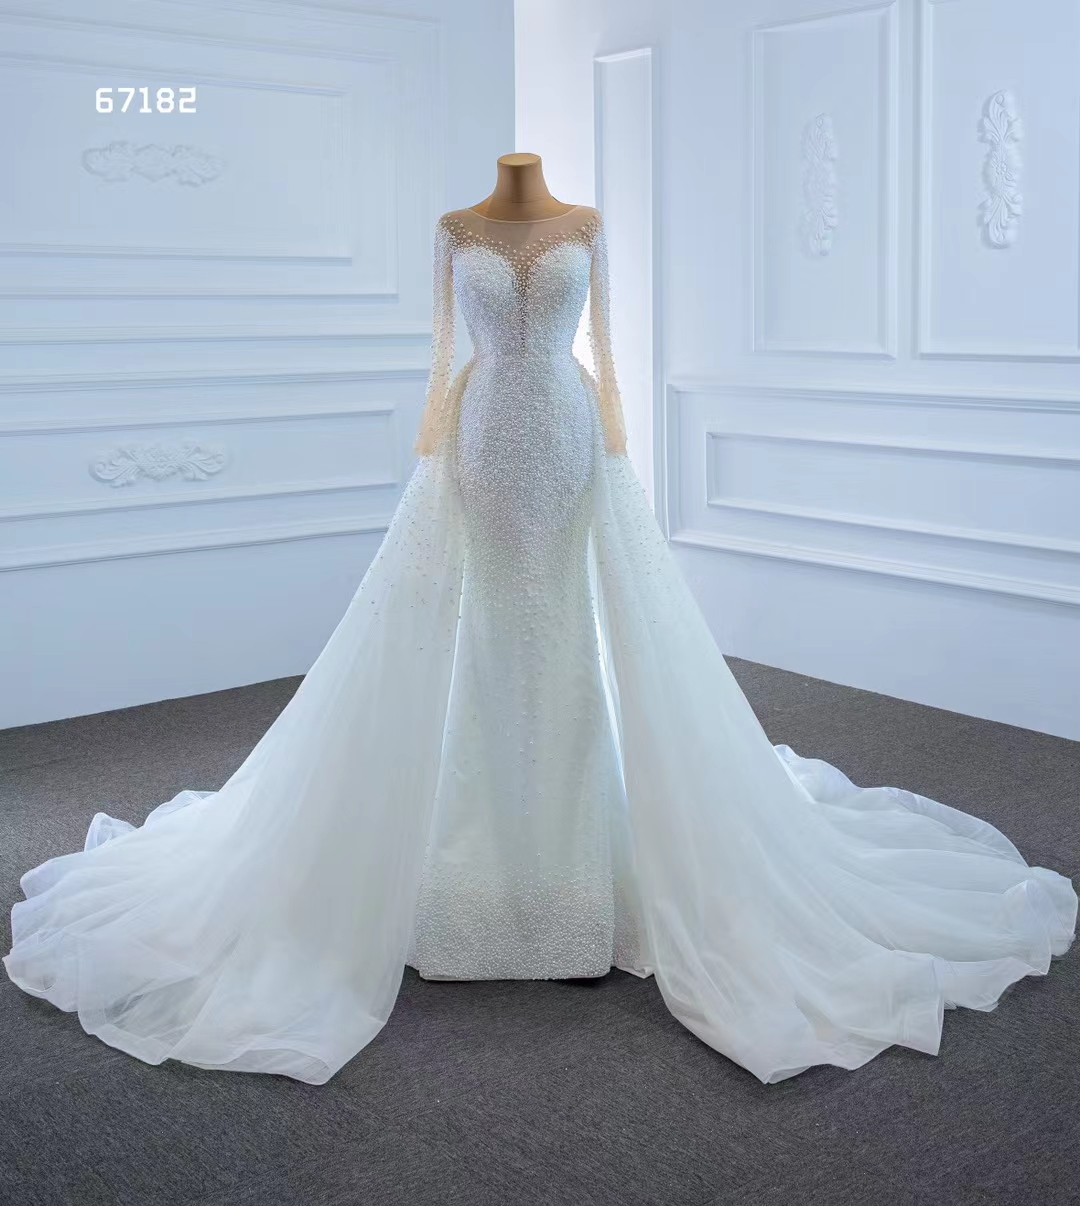 Princesse à manches longues cristal dentelle sirène robe de mariée robe de mariage élégant SM67182